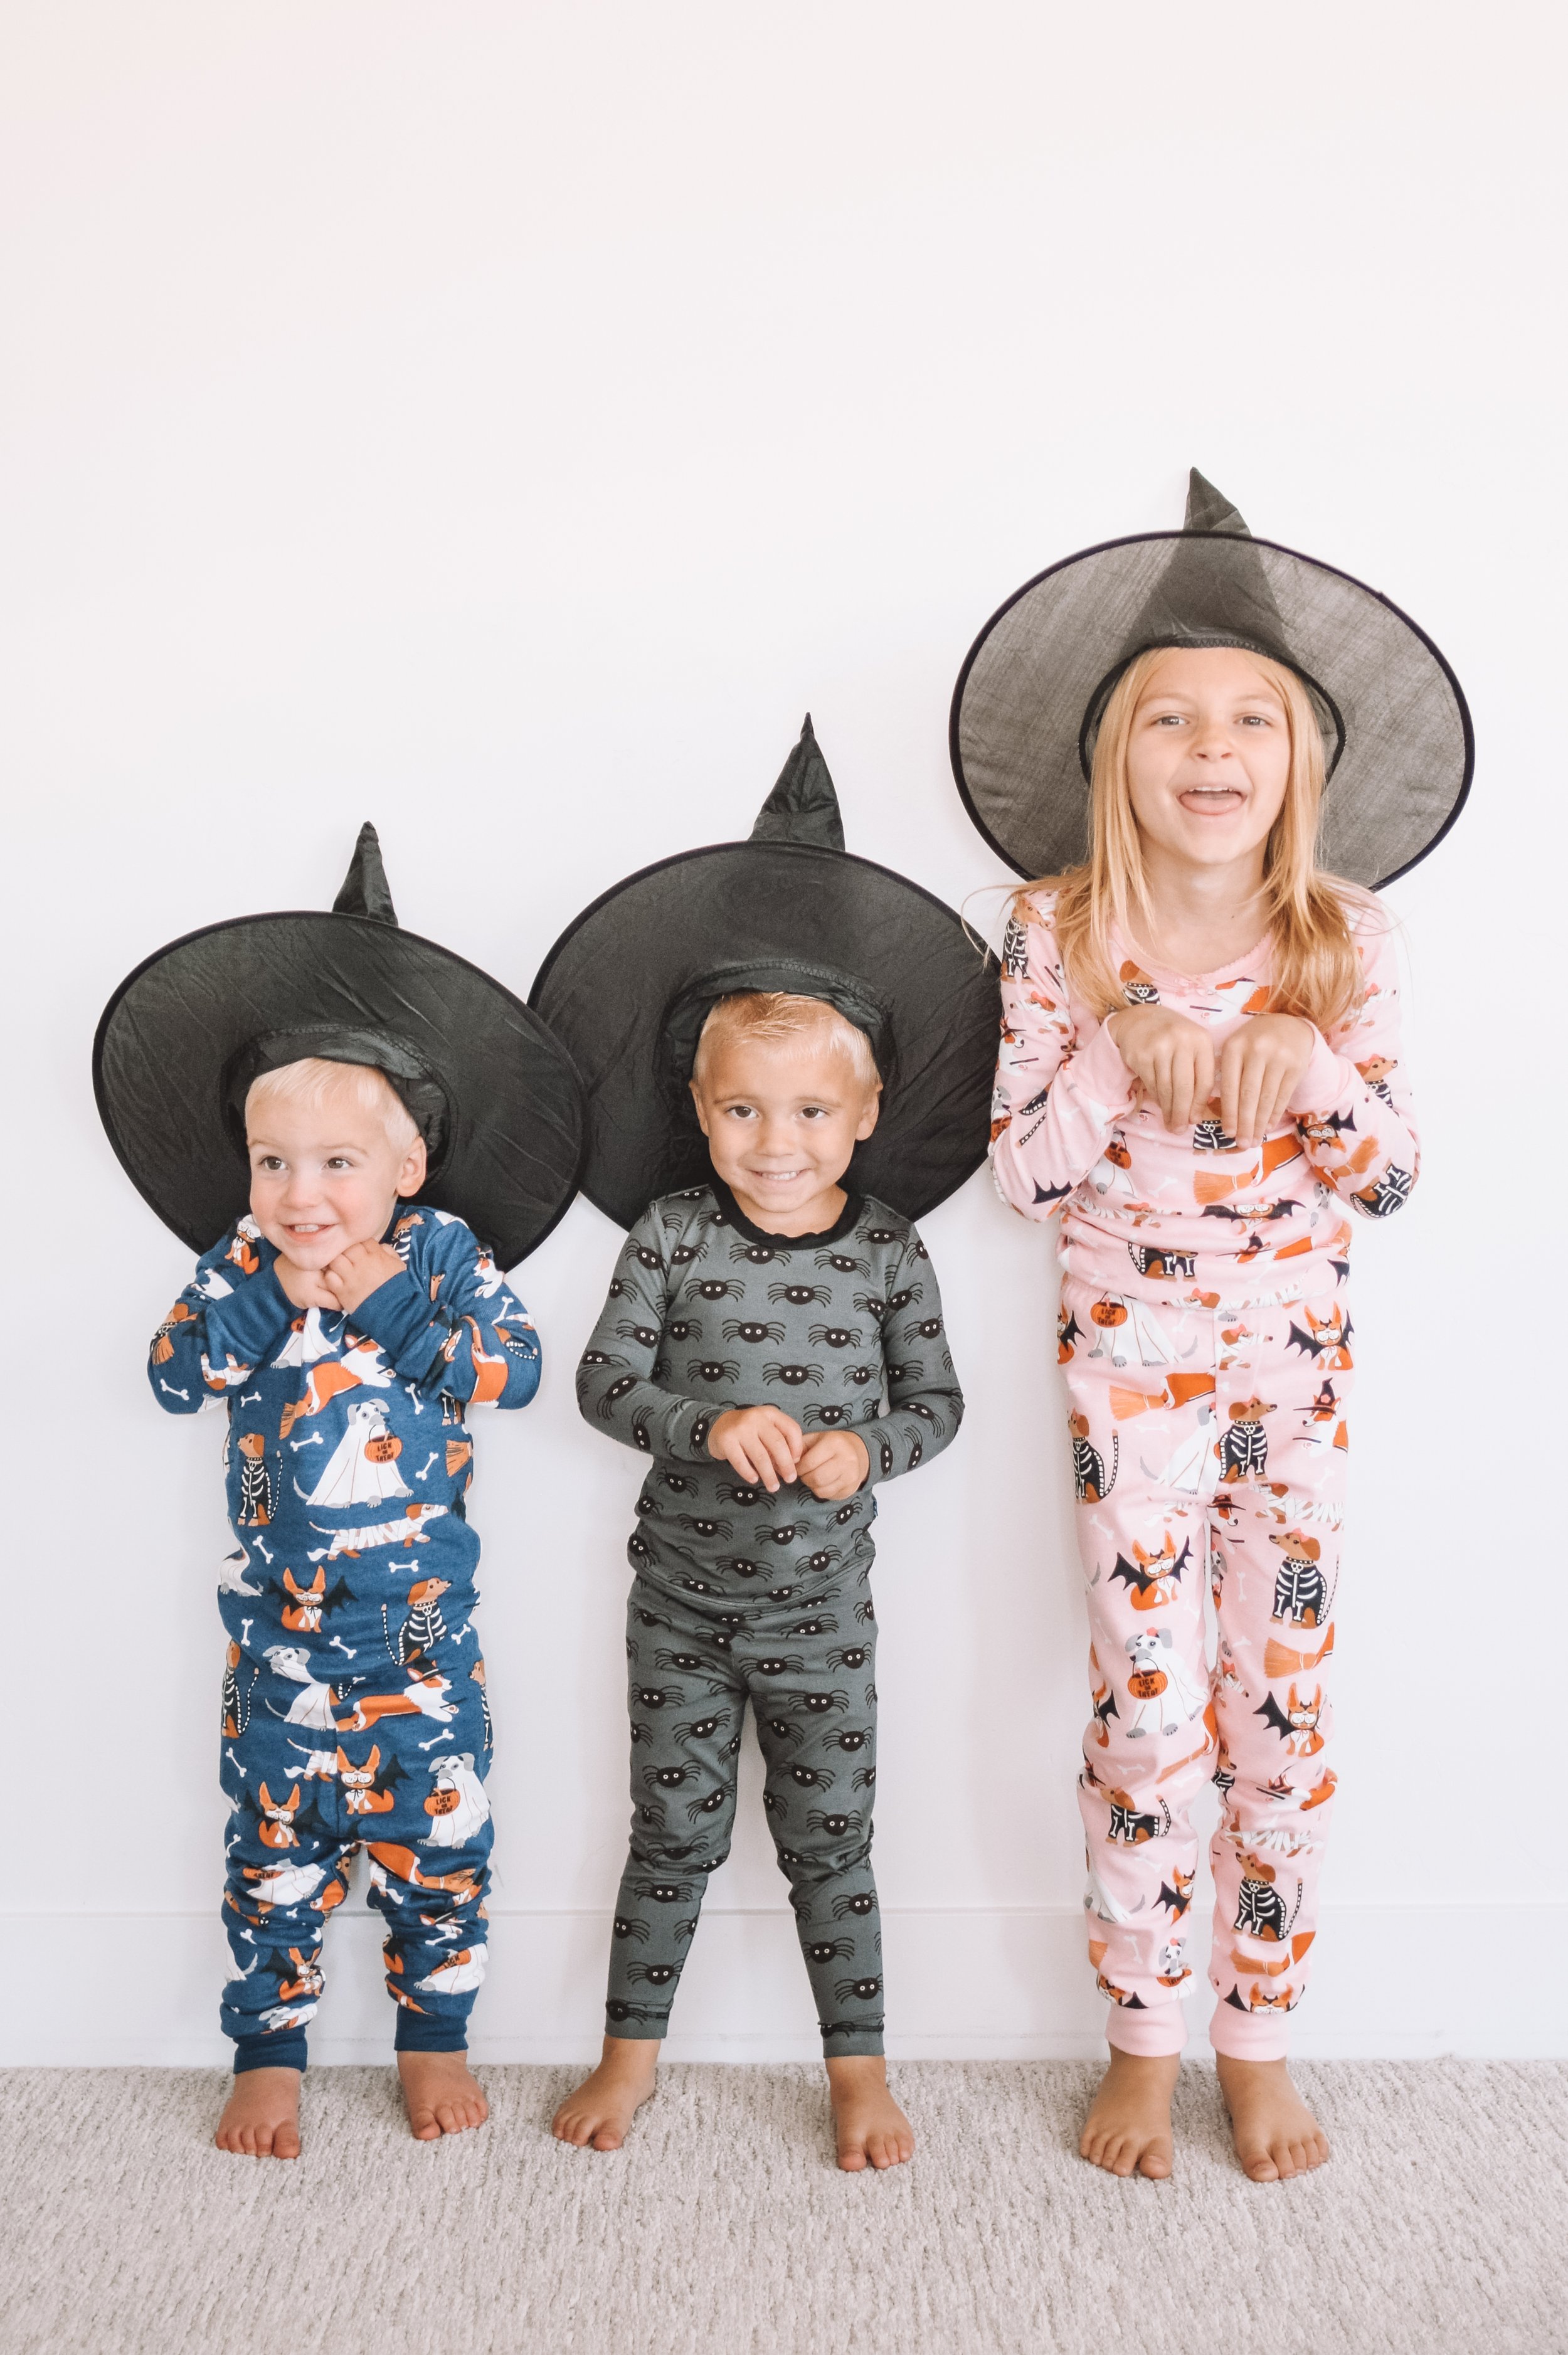 Kids Halloween Pajamas